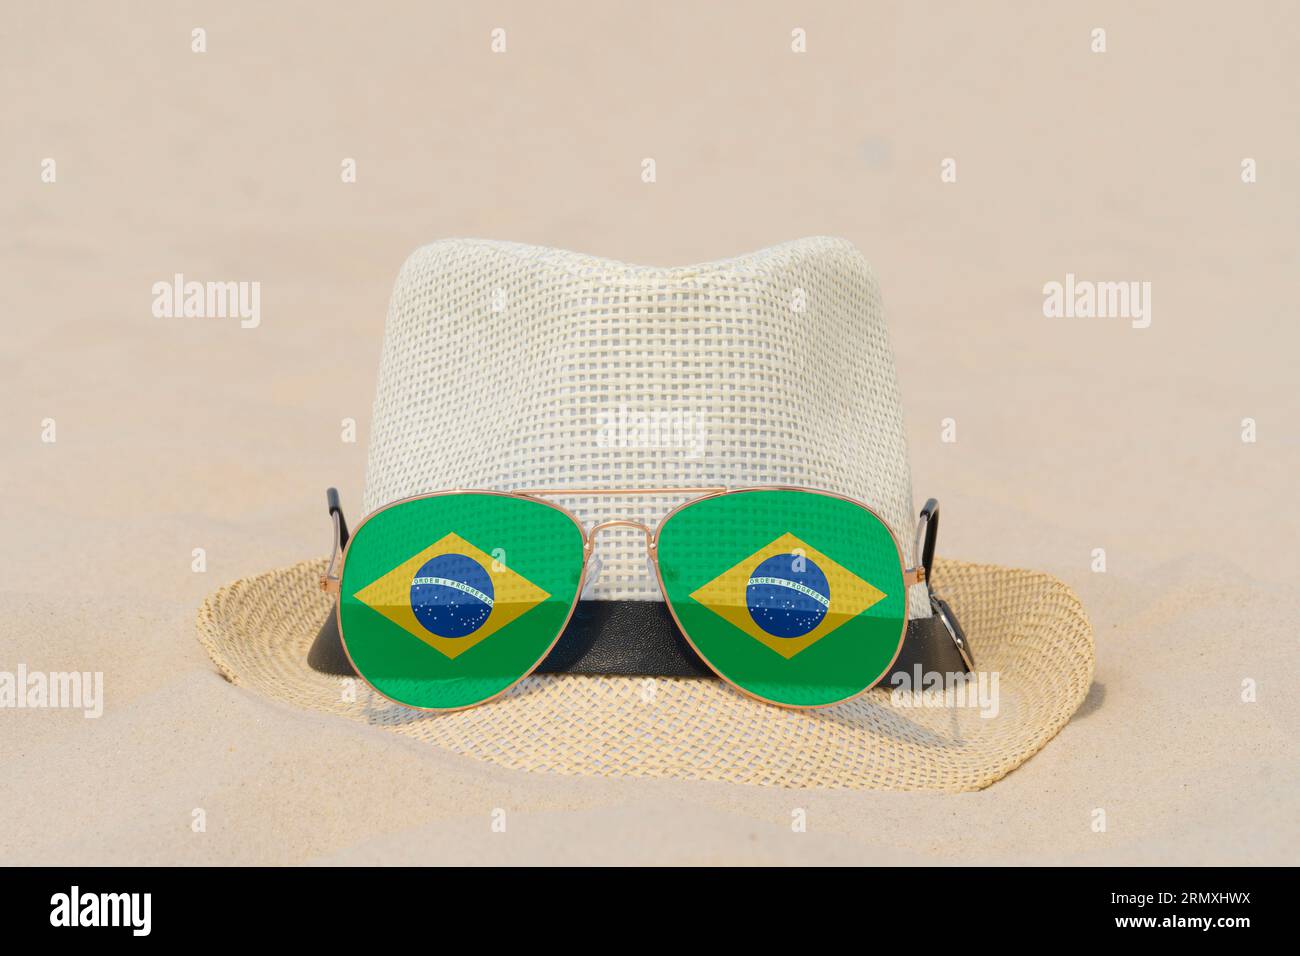 Sonnenbrille mit Brille in Form einer brasilianischen Flagge und einem Hut liegen auf Sand. Konzept von Sommerferien und Reisen in Brasilien. Sommerruhe. Weihnachtszeit Stockfoto